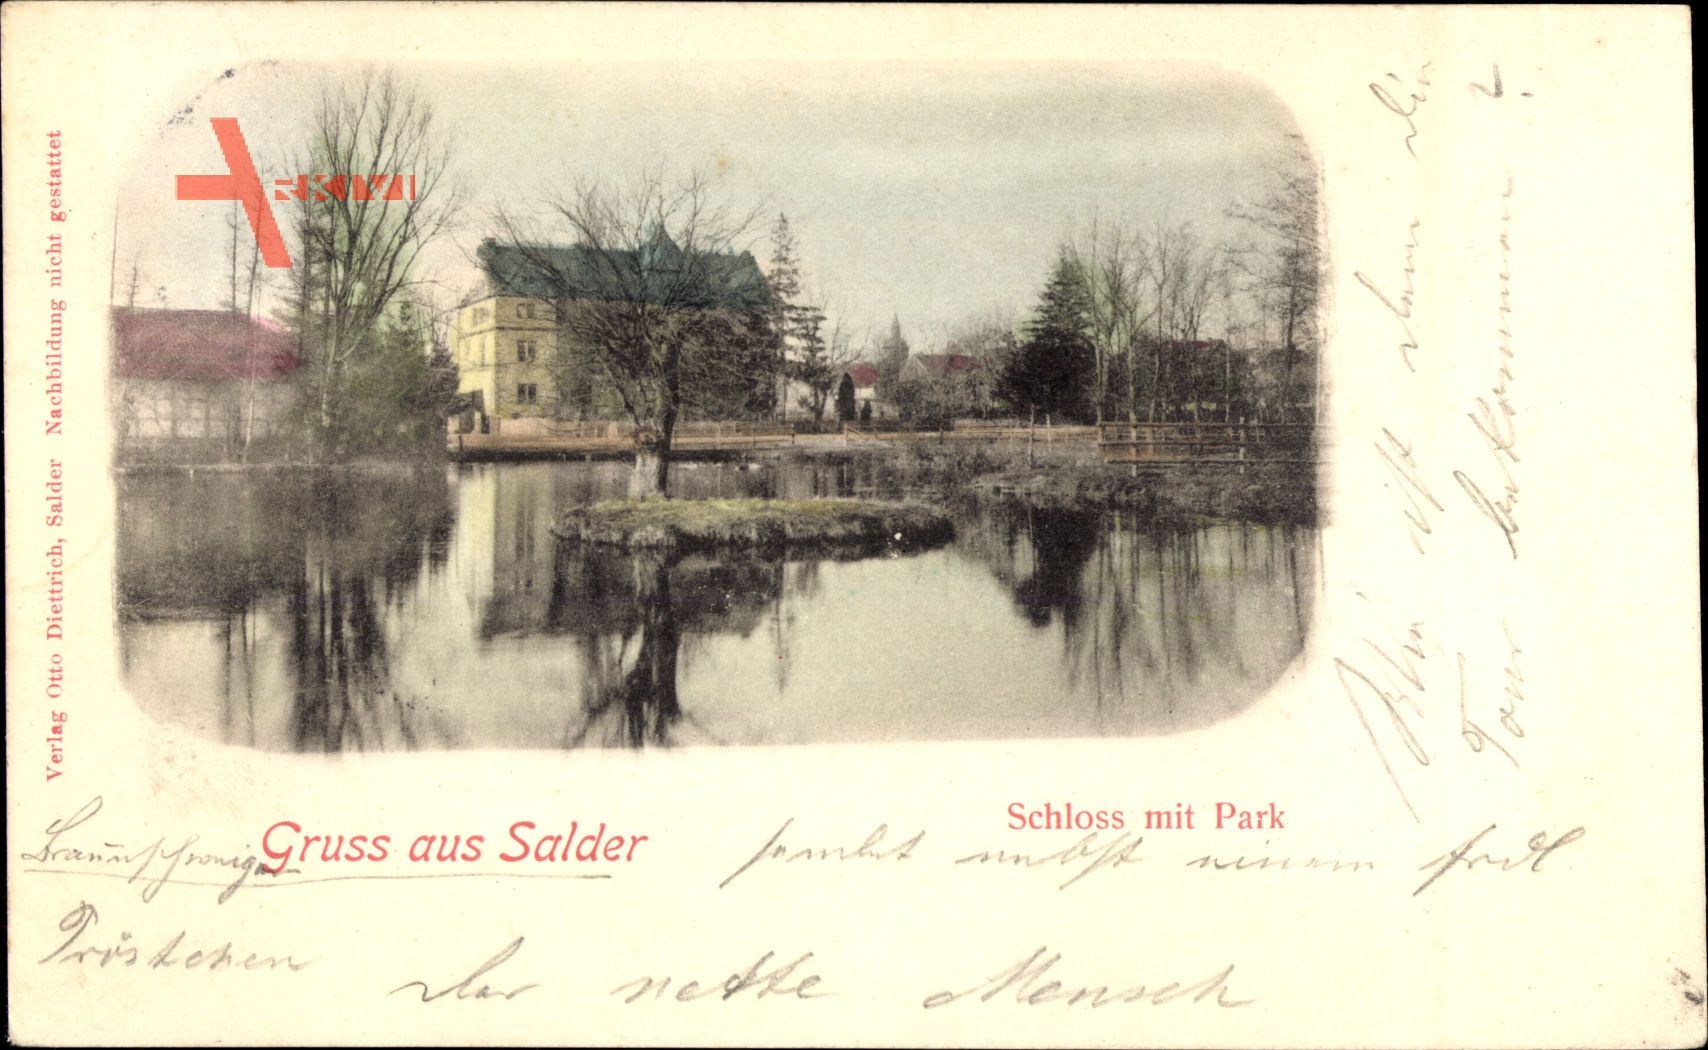 Salder Salzgitter in Niedersachsen, Blick übers Wasser auf Schloss mit Park